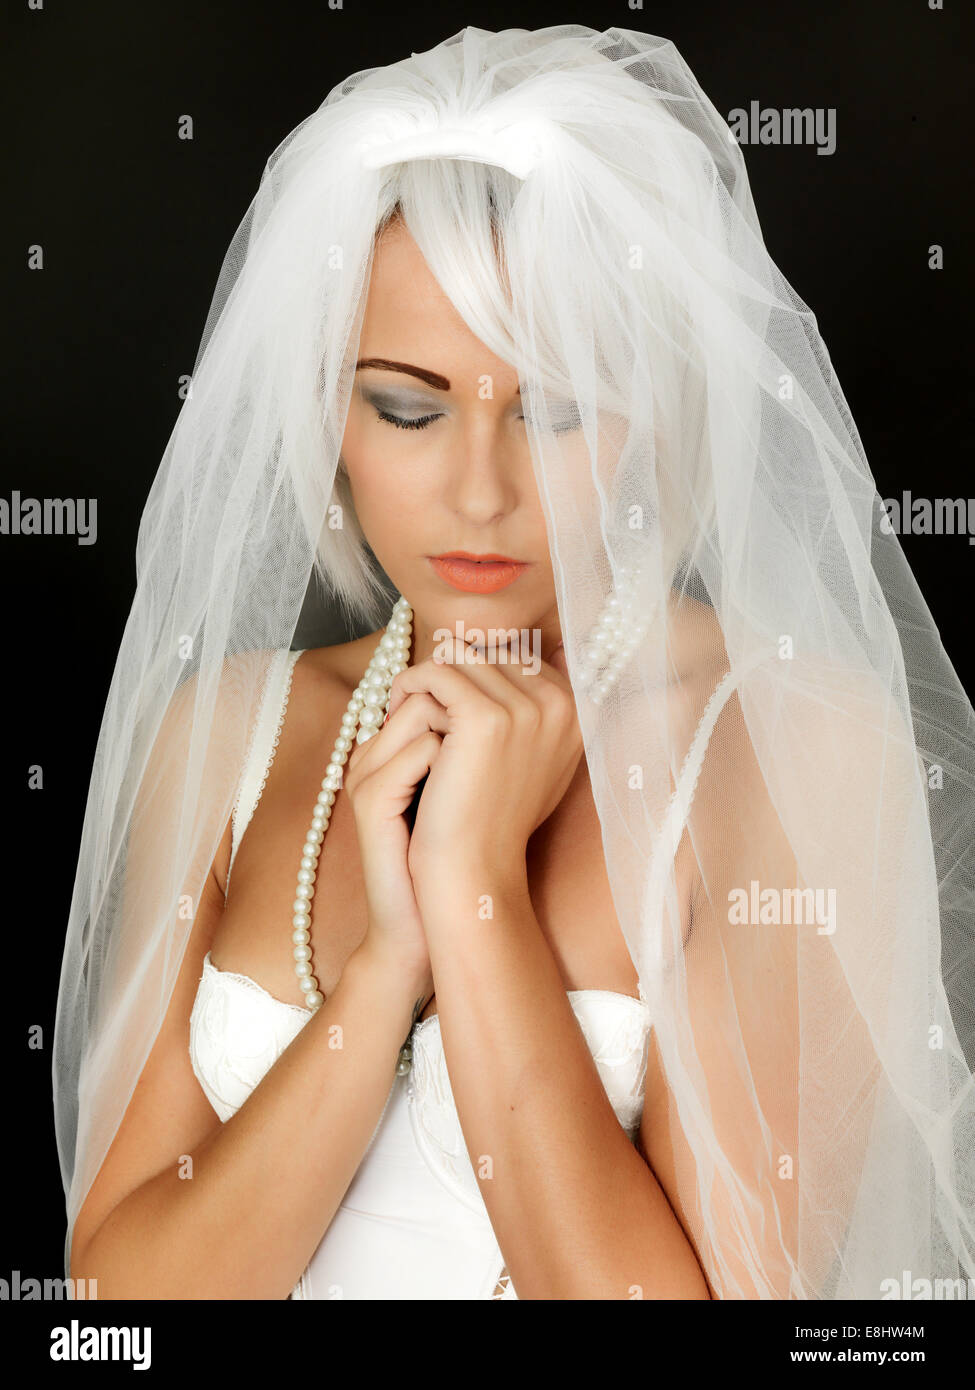 Junge Frau Braut zu sein eine weisse Hochzeit Schleier im Vorgriff auf ein neues Leben und ein Anfang in einer Lebenspartnerschaft vor einem schwarzen Hintergrund isoliert Stockfoto